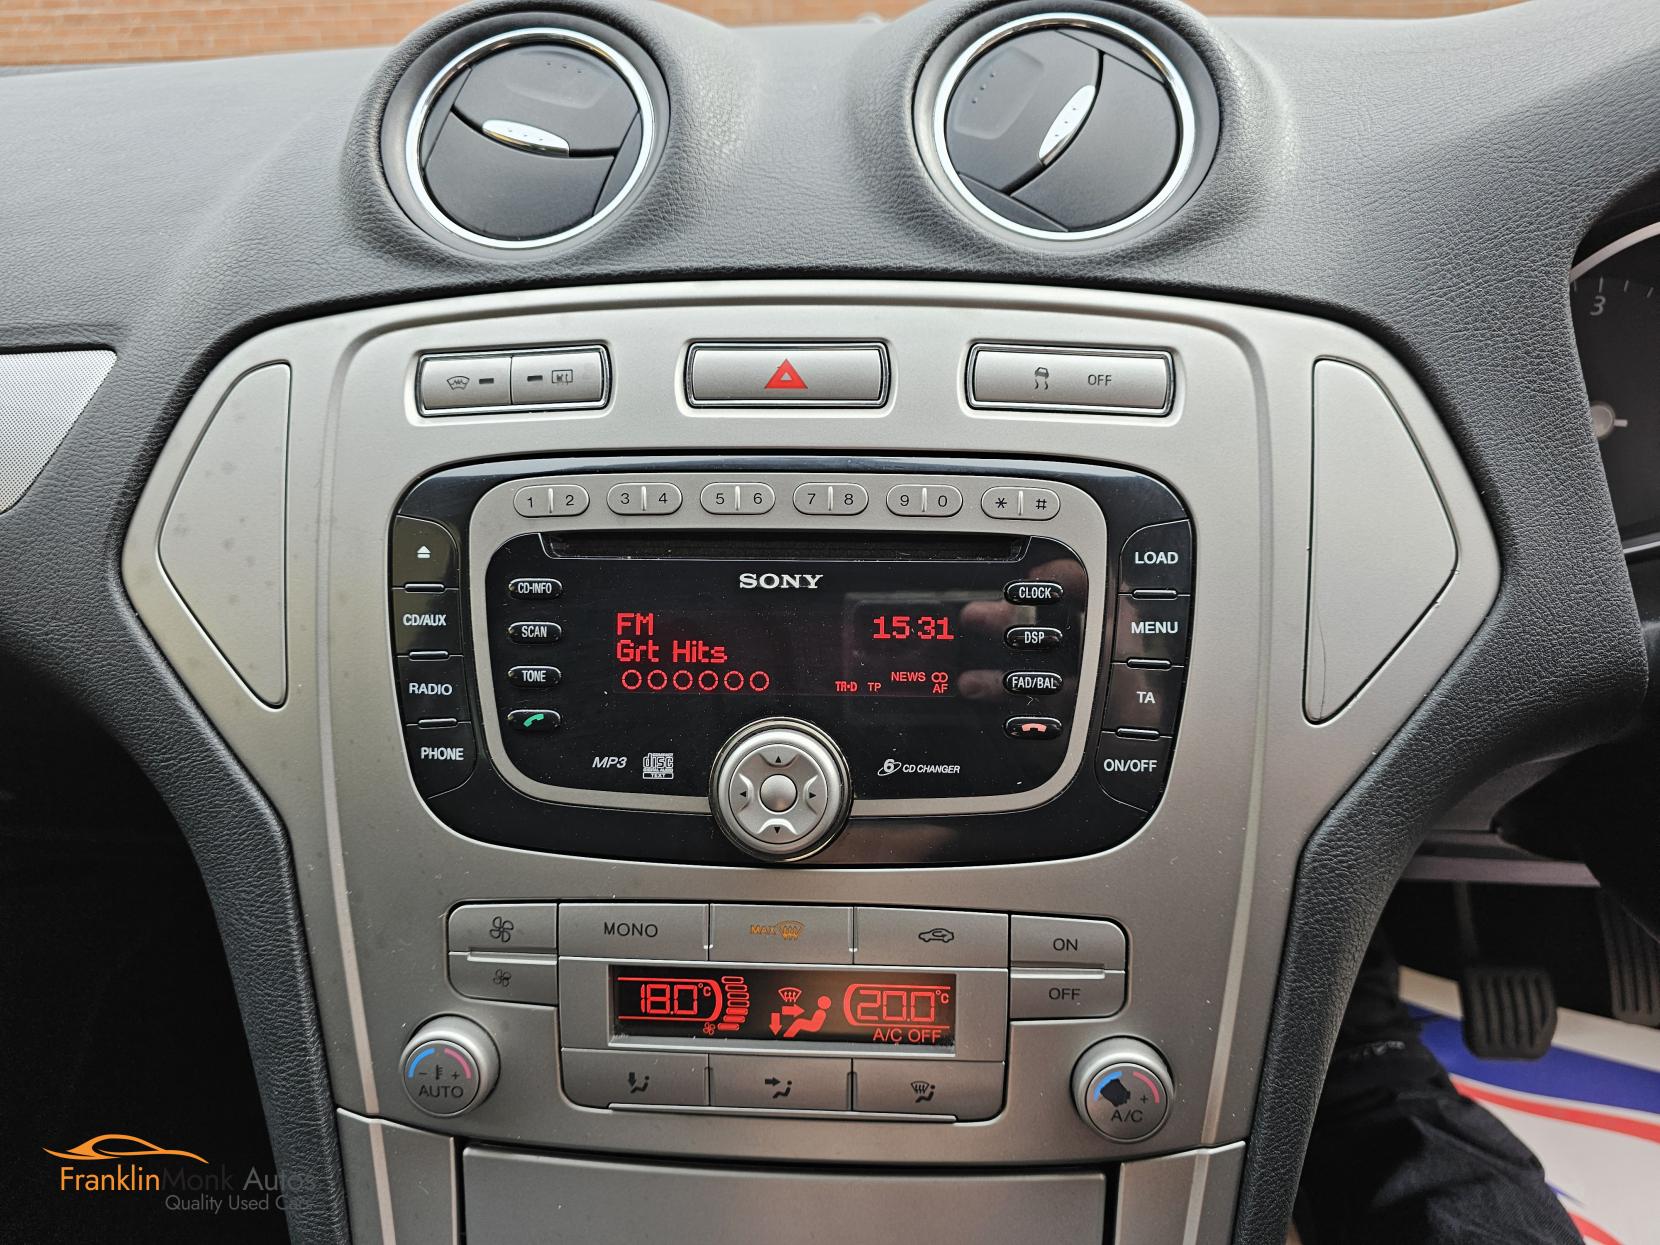 Ford Mondeo 1.8 TDCi Zetec Hatchback 5dr Diesel Manual (154 g/km, 123 bhp)